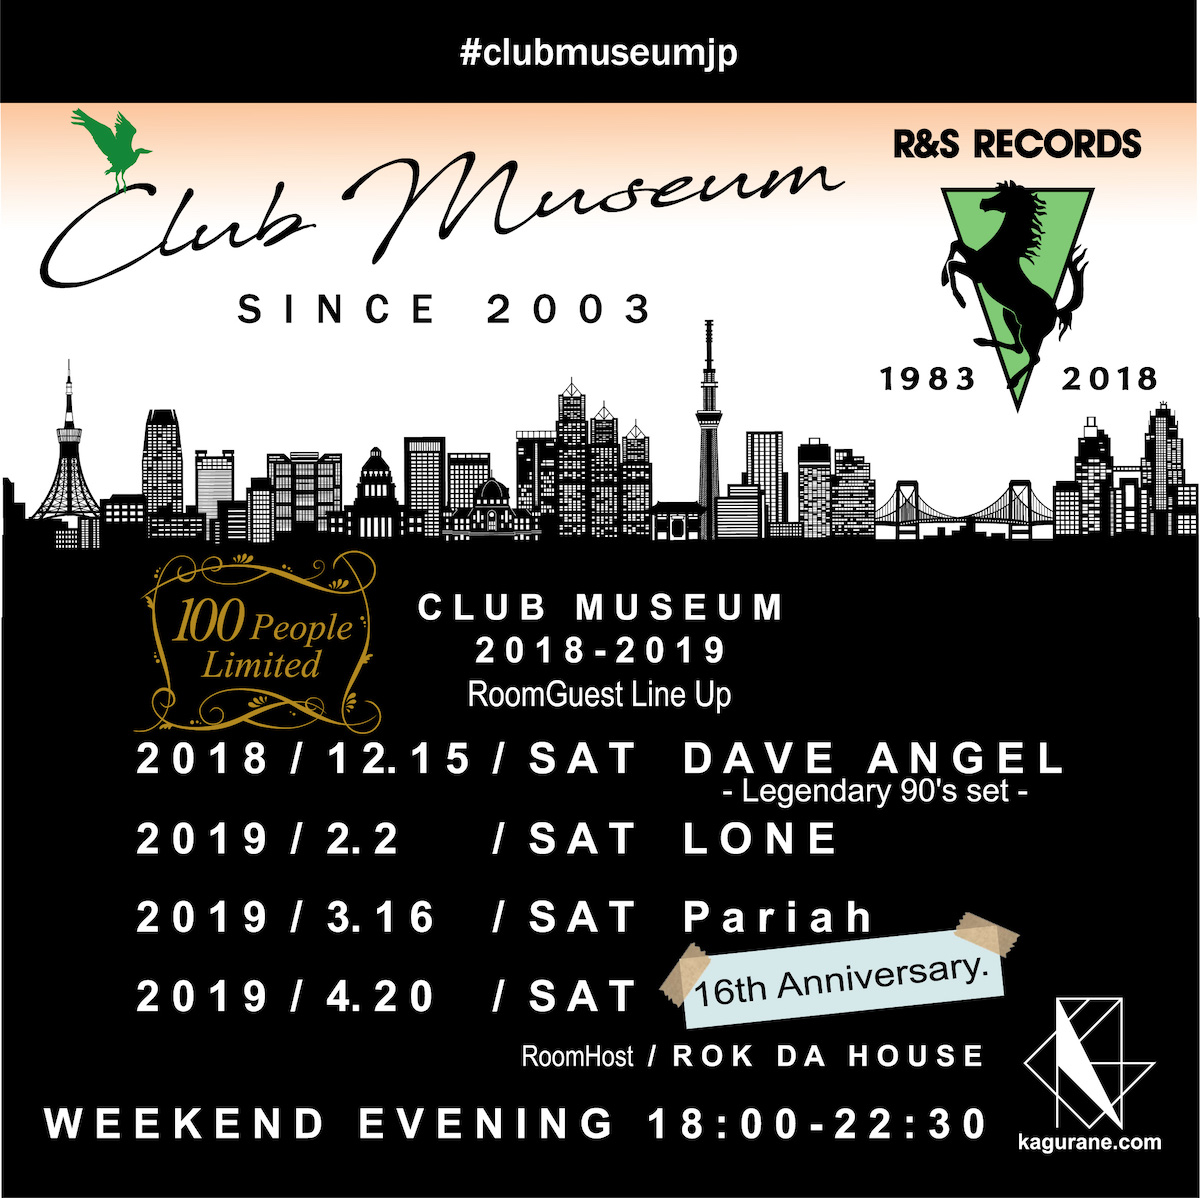 Club museum 2018-2019